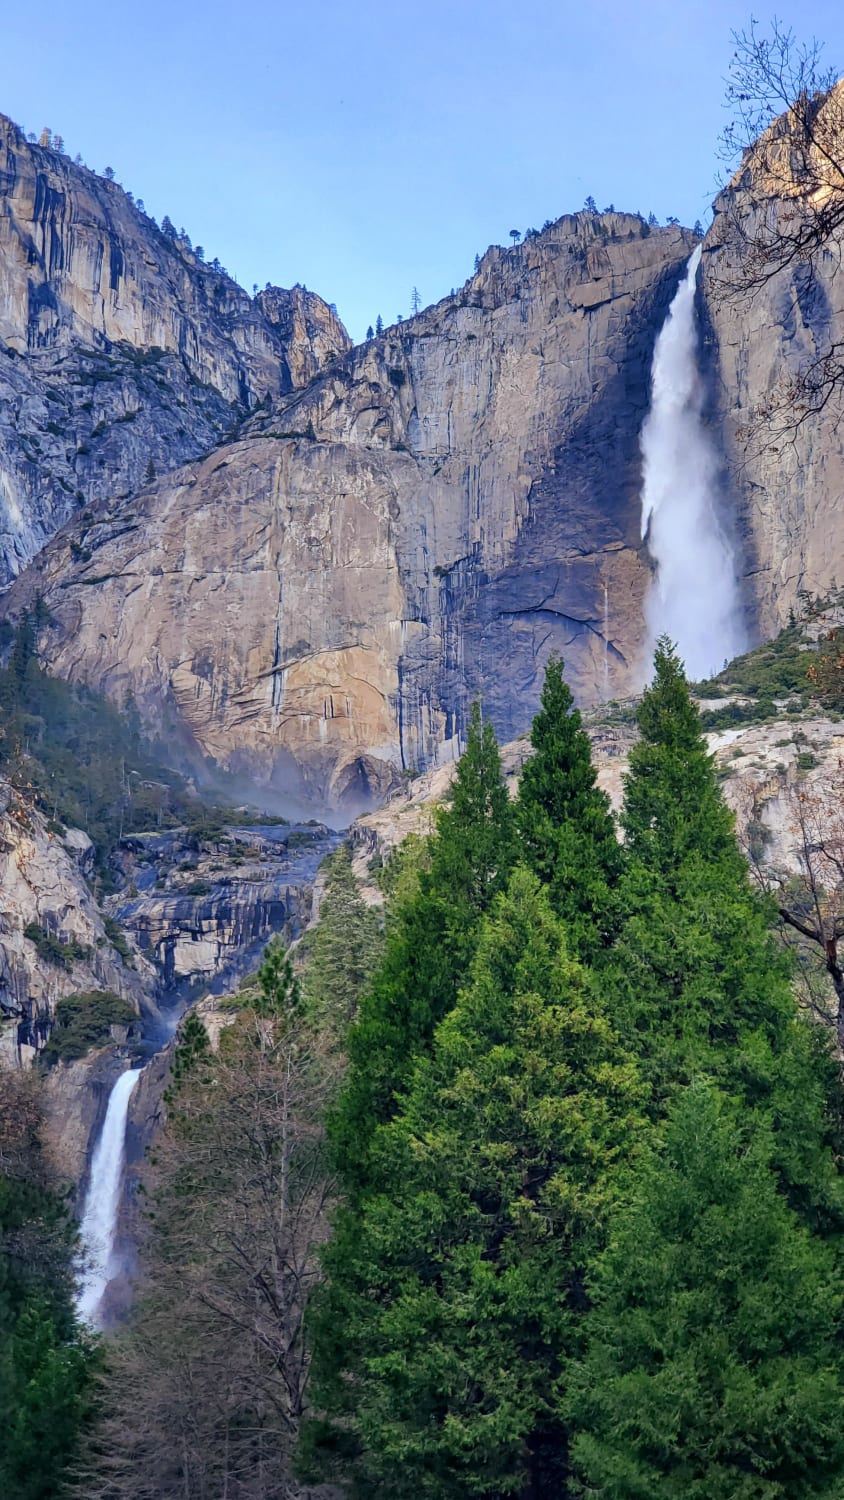 Upper and Lower Yosemite Falls at Yosemite, CA